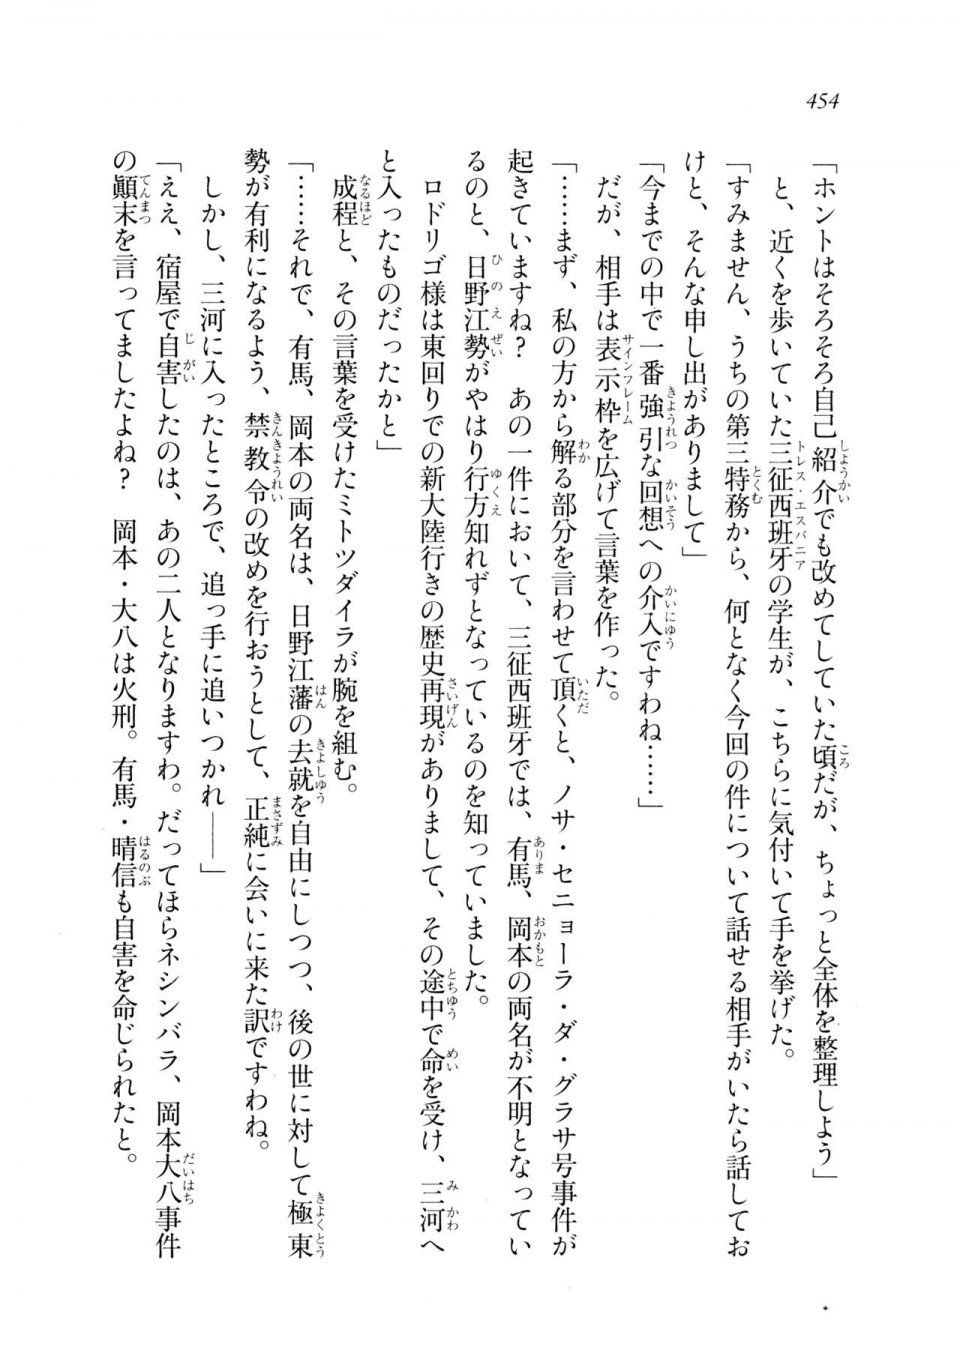 Kyoukai Senjou no Horizon LN Sidestory Vol 2 - Photo #452